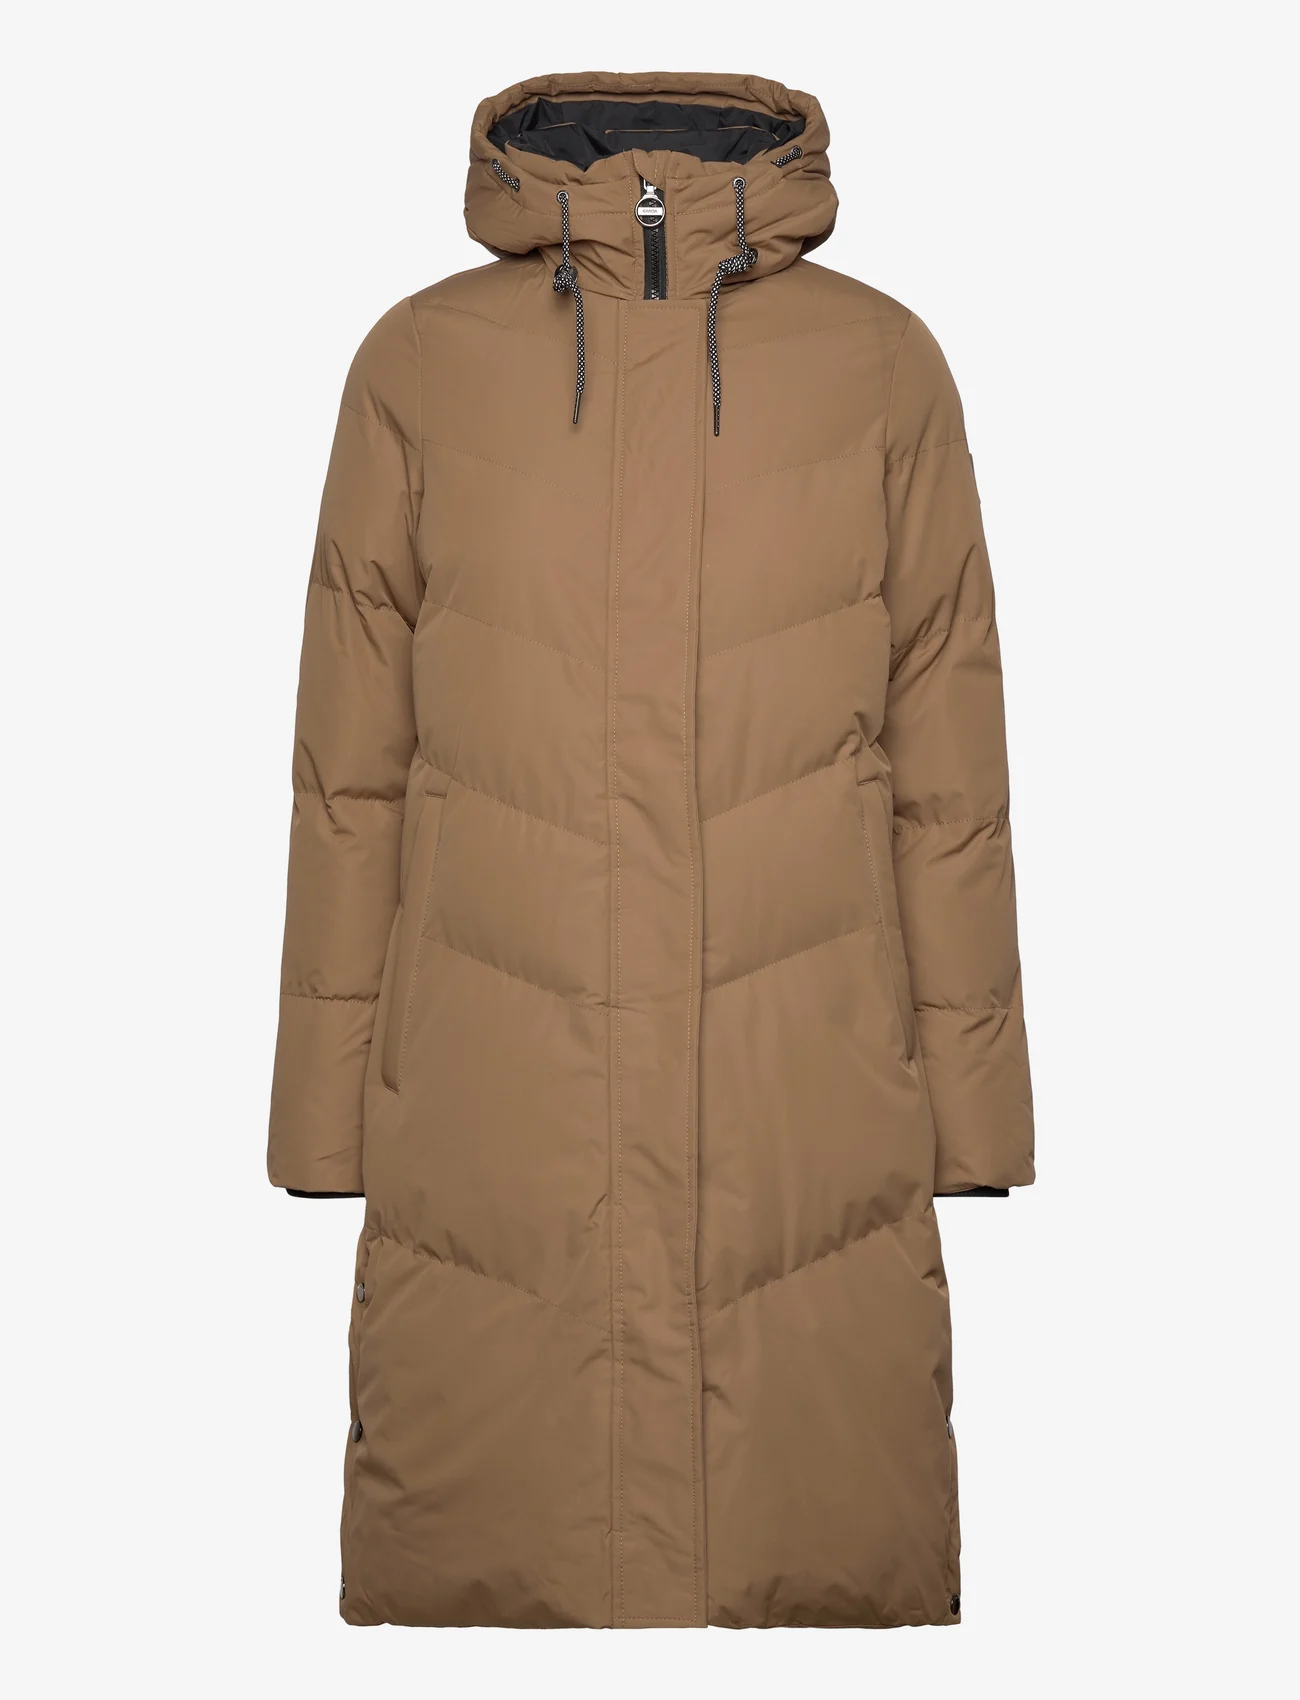 Garcia - ladies outdoor jackets - vinterjackor - brown - 0